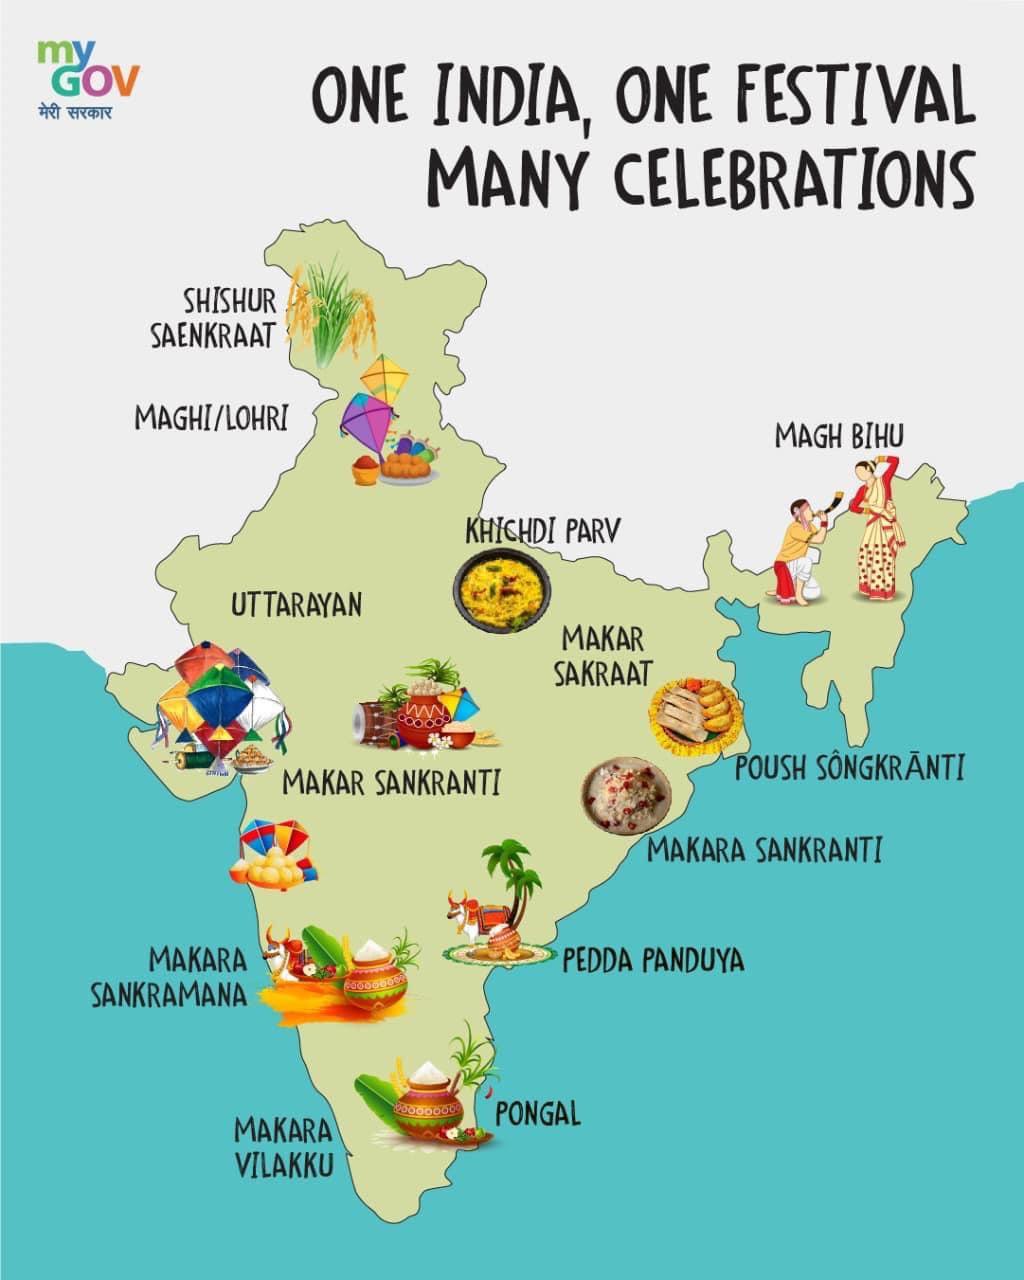 Bhubaneswar, 14/01/2022 One India,One festival and many celebrations